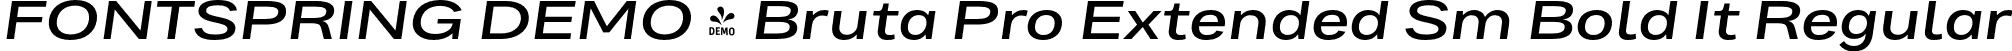 FONTSPRING DEMO - Bruta Pro Extended Sm Bold It Regular font | Fontspring-DEMO-brutaproextended-semibolditalic.otf